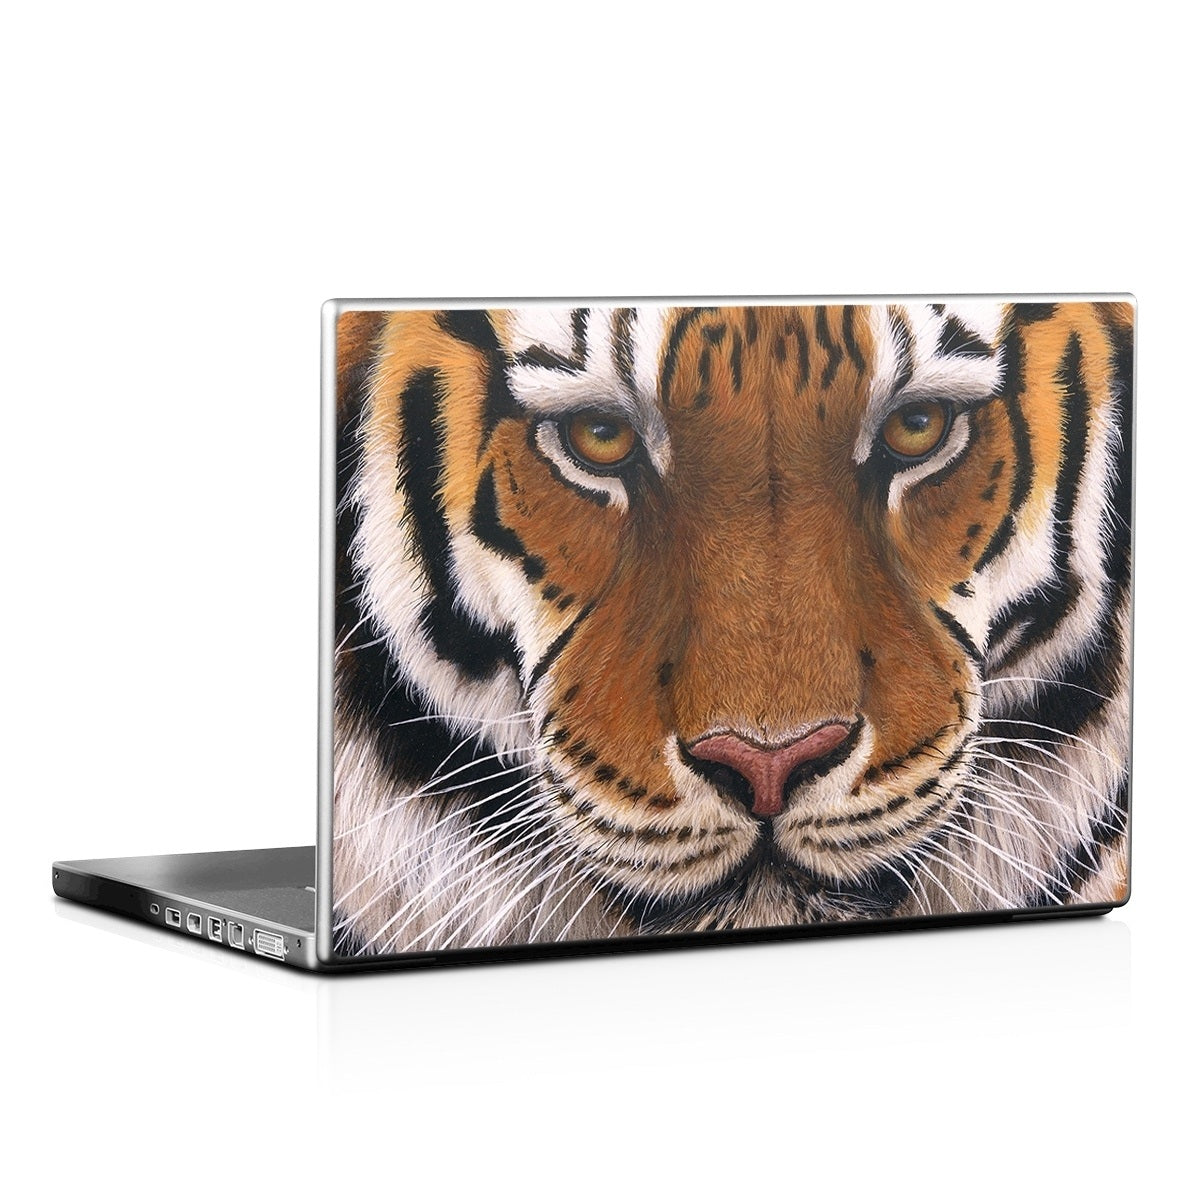 Siberian Tiger - Laptop Lid Skin